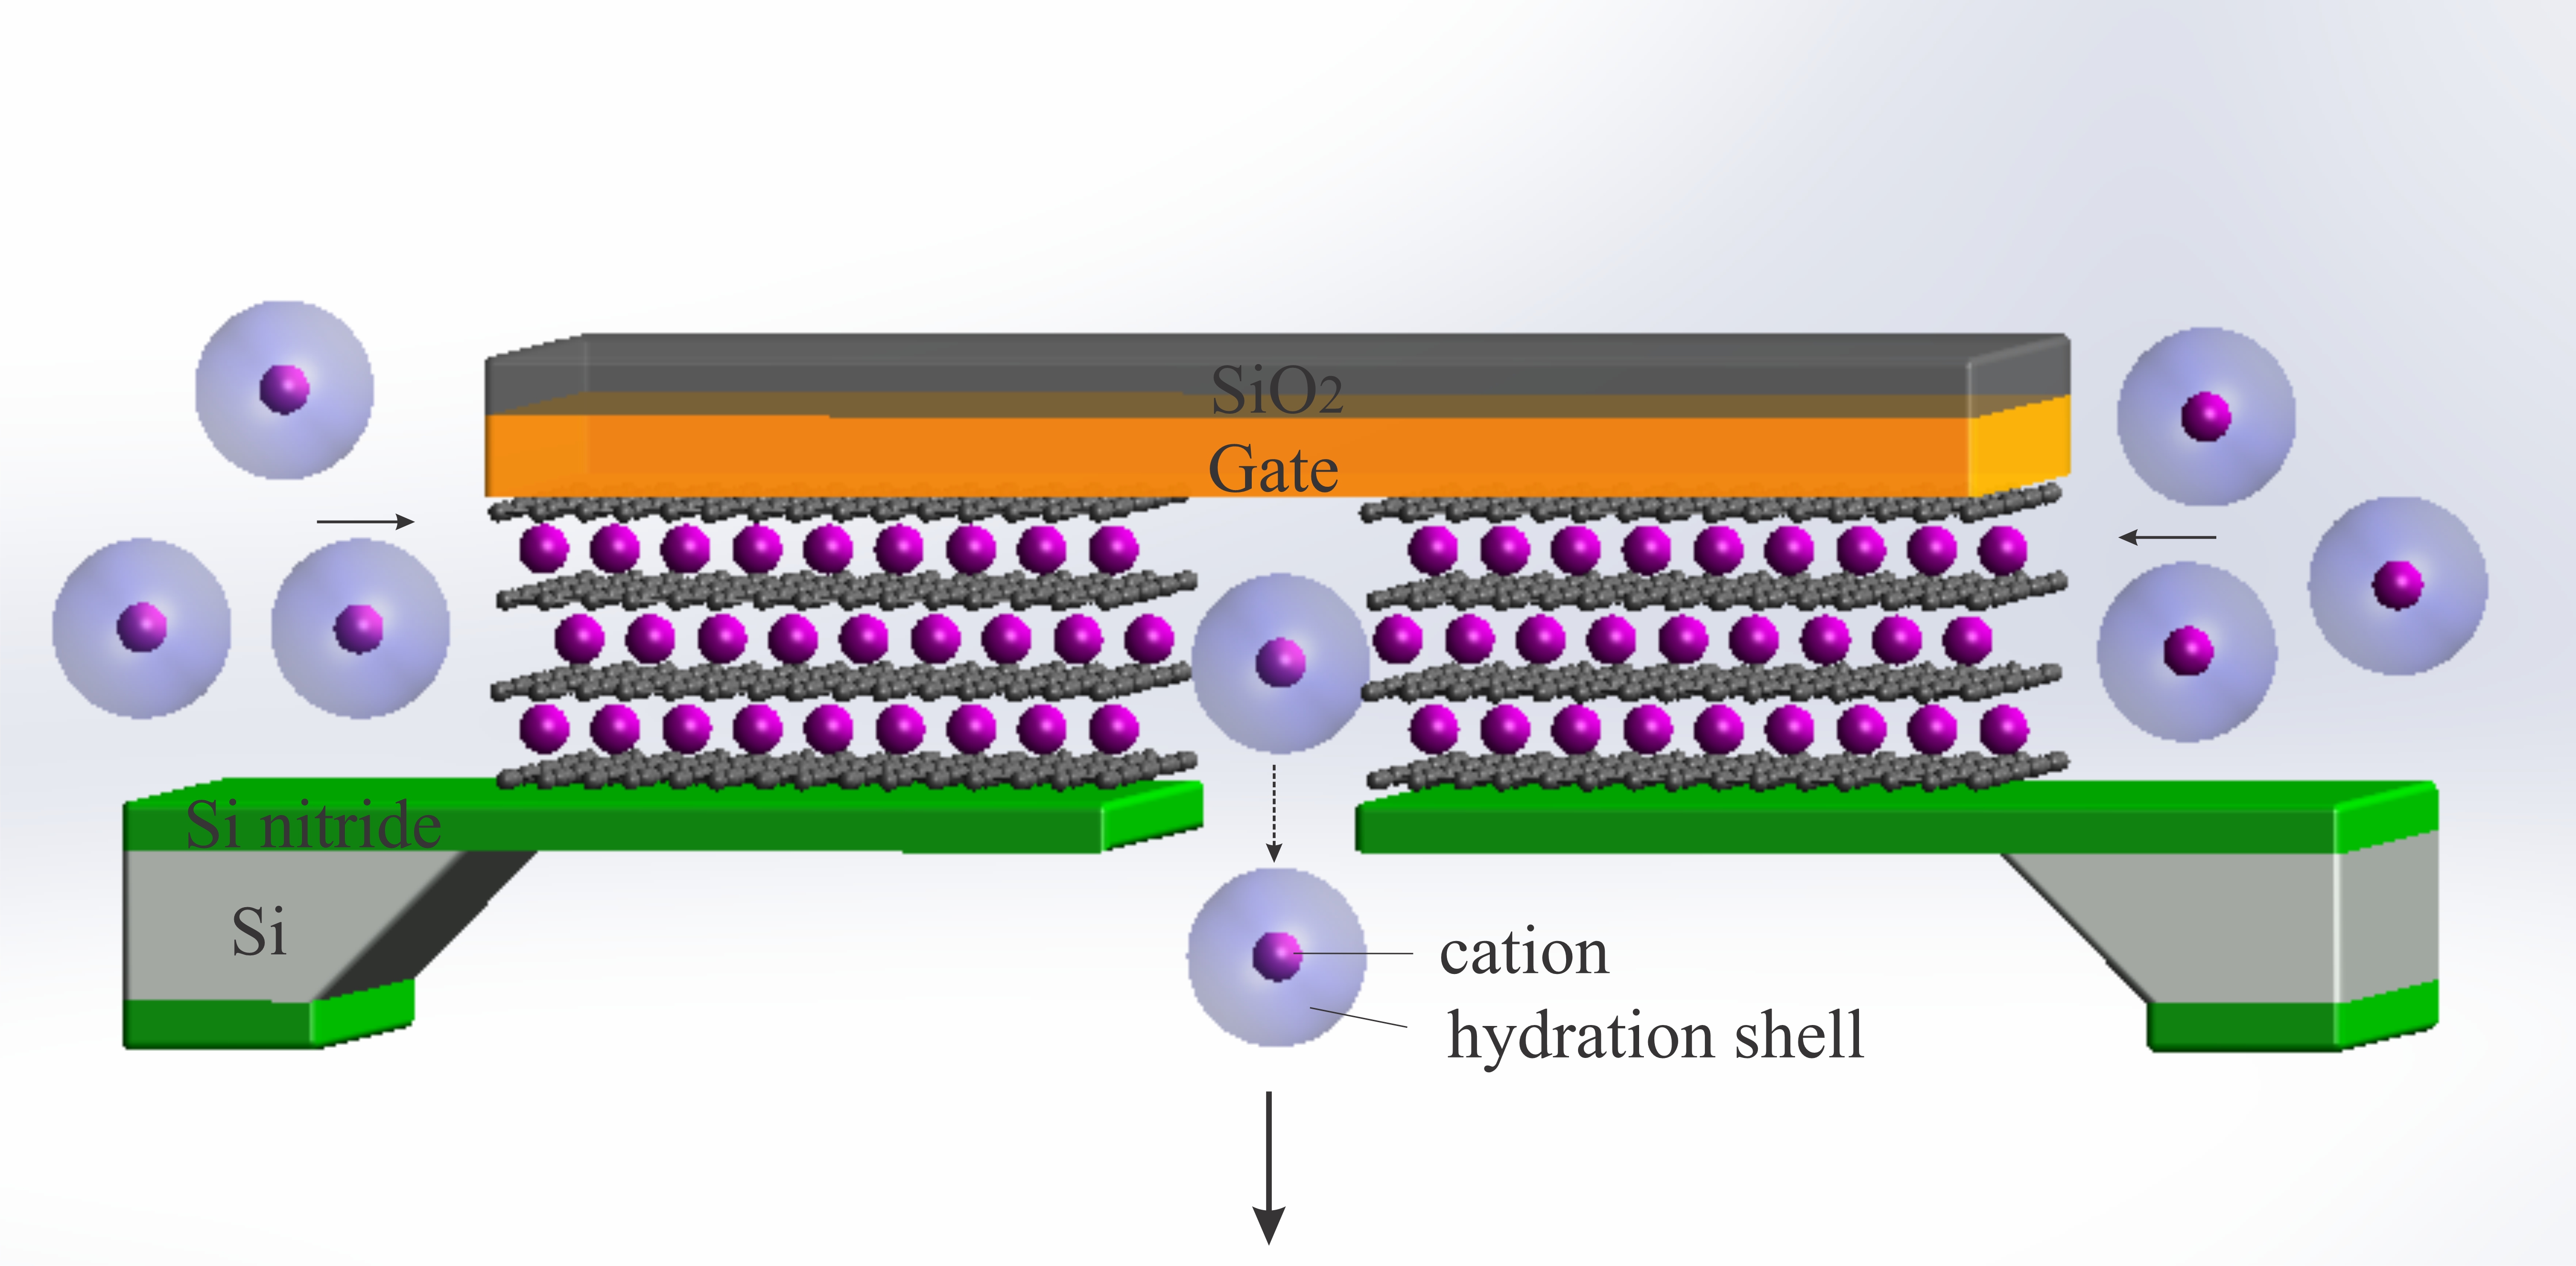  将离子晶体管缩小到极限 - 由 3 埃大小的石墨烯通道制成的原子级离子晶体管的示意图。施加电势以模拟生物通道壁上的电荷，并使离子嵌入和可渗透的离子传输超过渗透阈值。 